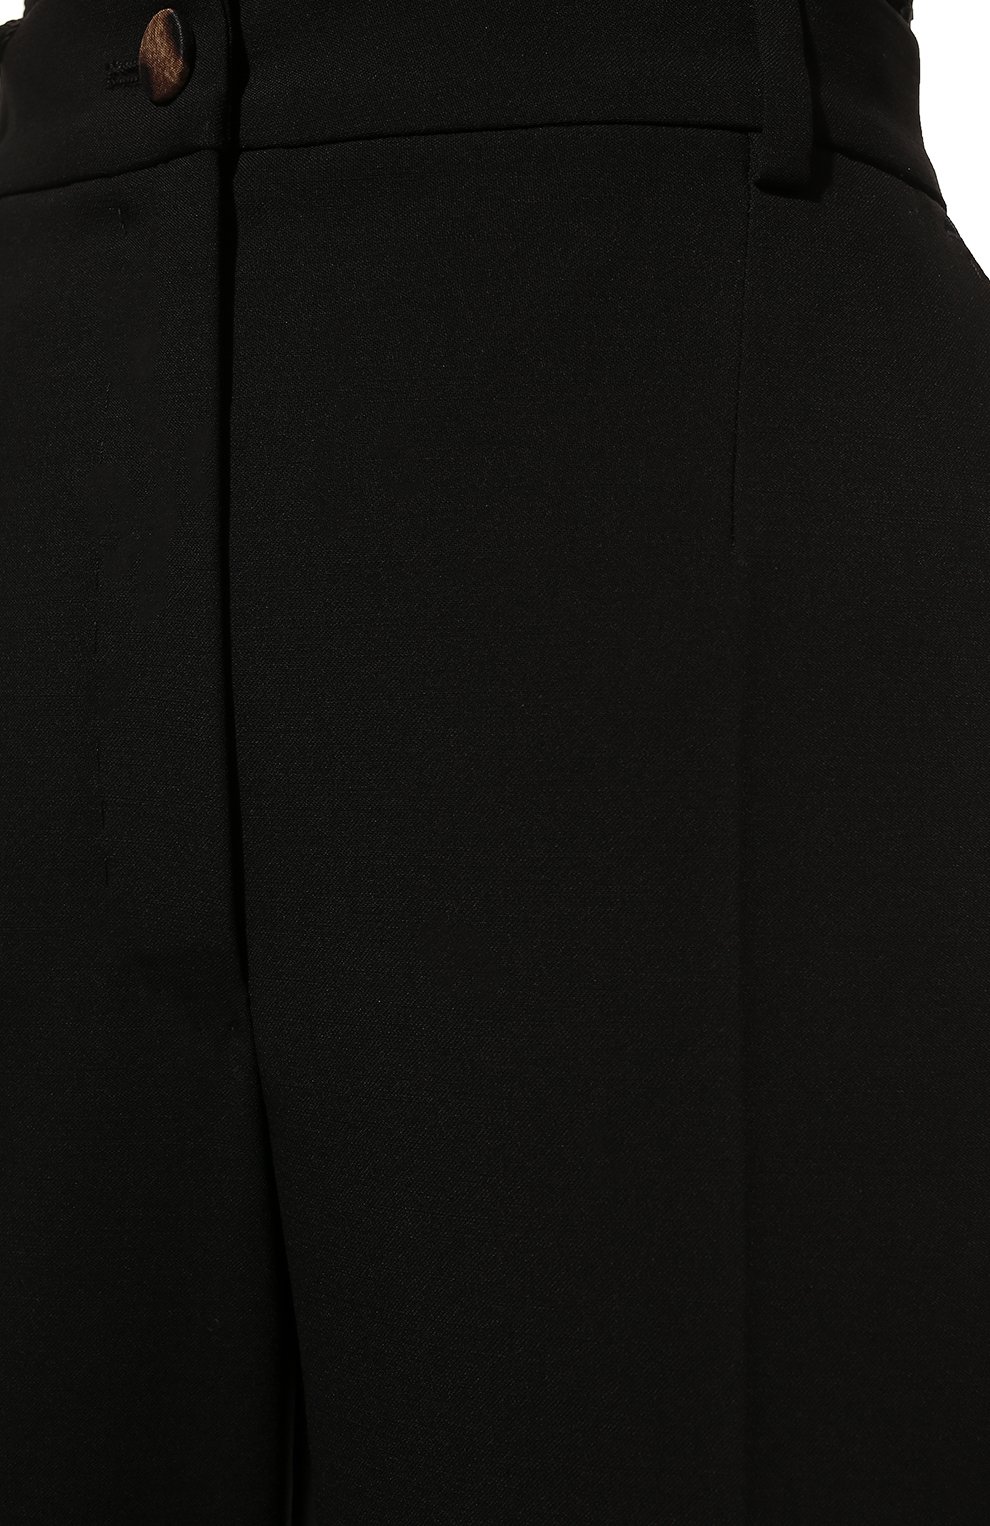 Женские шерстяные брюки DOLCE & GABBANA черного цвета, арт. FTAM2T/FUBAJ | Фото 5 (Материал внешний: Шерсть; Стили: Гламурный; Длина (брюки, джинсы): Стандартные, Укороченные; Женское Кросс-КТ: Брюки-одежда; Силуэт Ж (брюки и джинсы): Прямые; Региональные ограничения белый список (Axapta Mercury): RU)